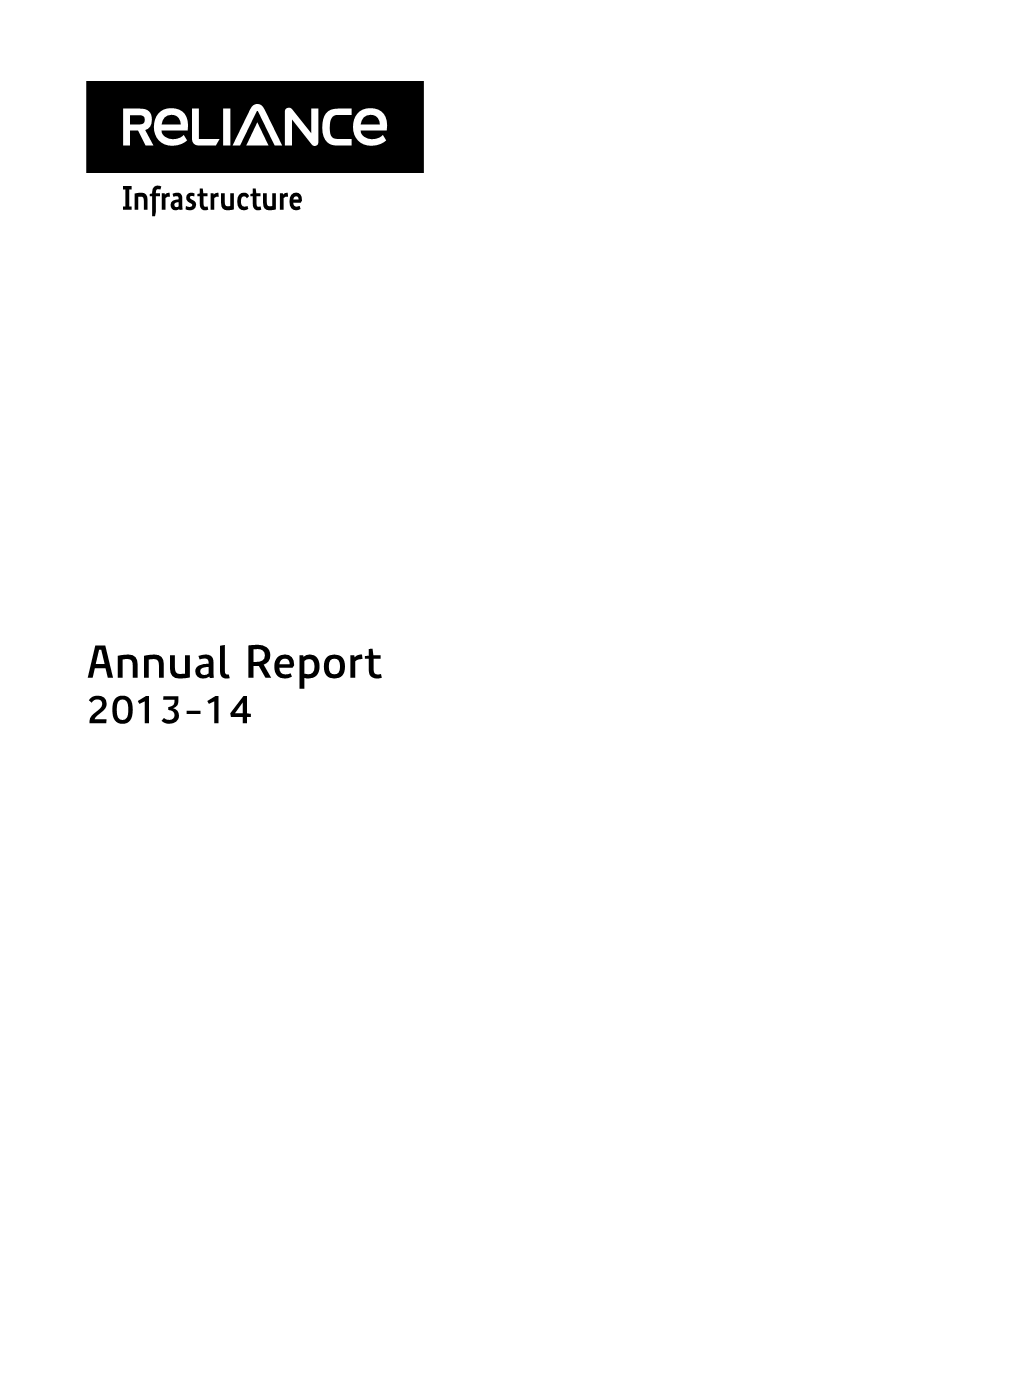 Annual Report 2013-14 Dhirubhai H